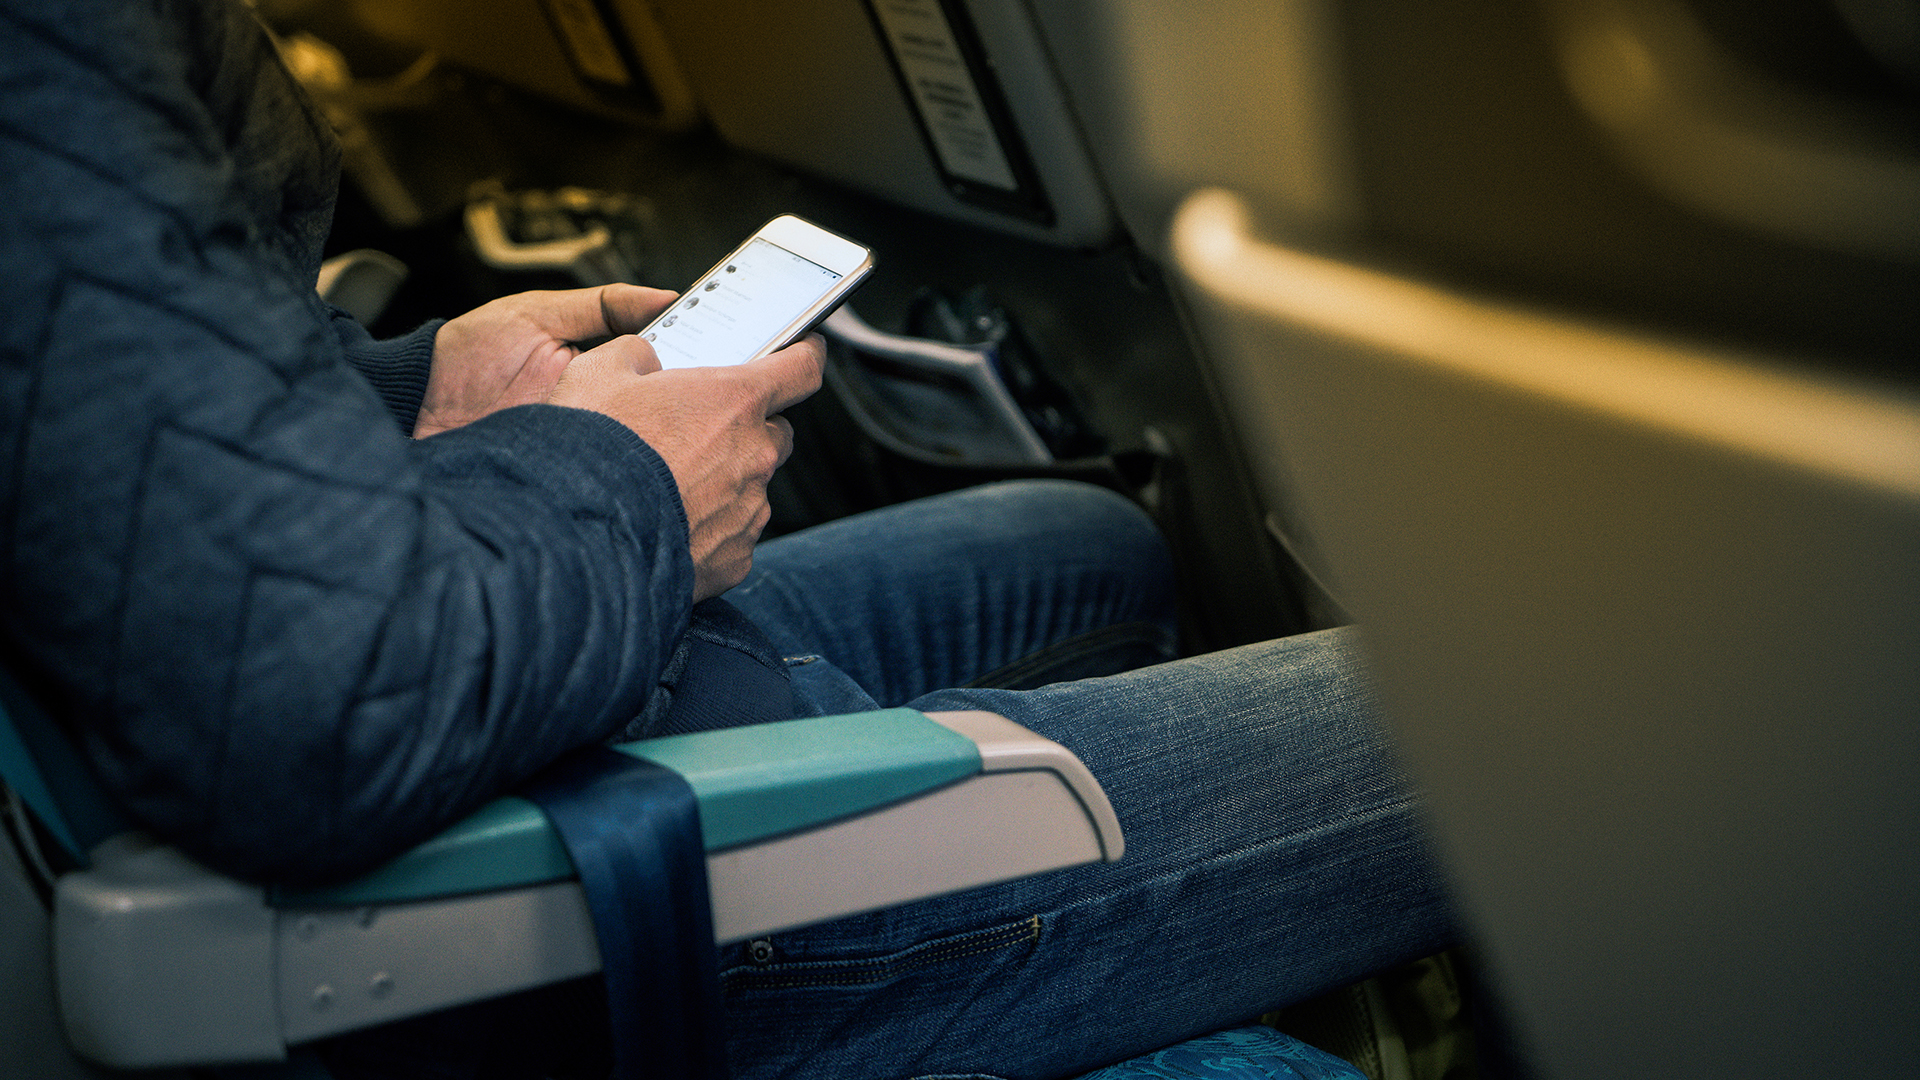 Una de las primeras instrucciones por parte de los asistentes de vuelo a los pasajeros es poner el movil en modo avion (Getty Images)